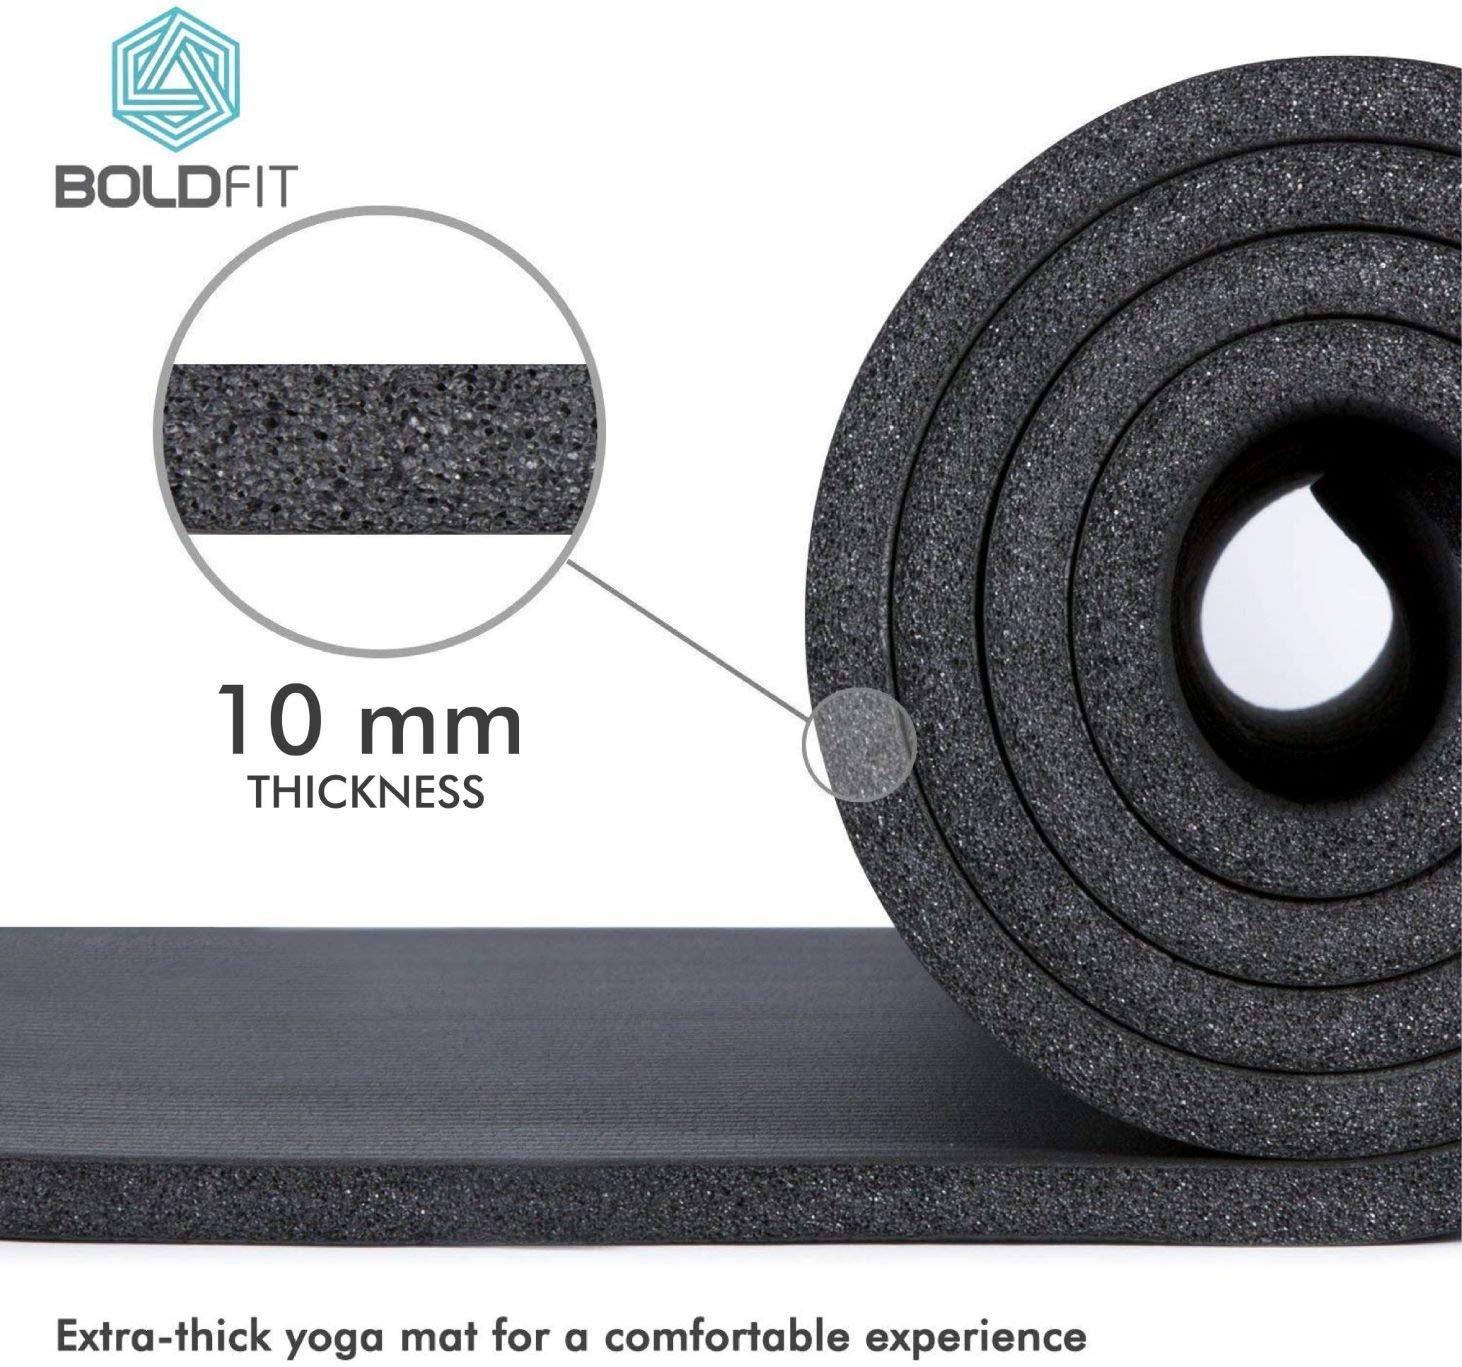 Boldfit Happy Yoga Mat: Buy box of 1.0 Yoga Mat at best price in